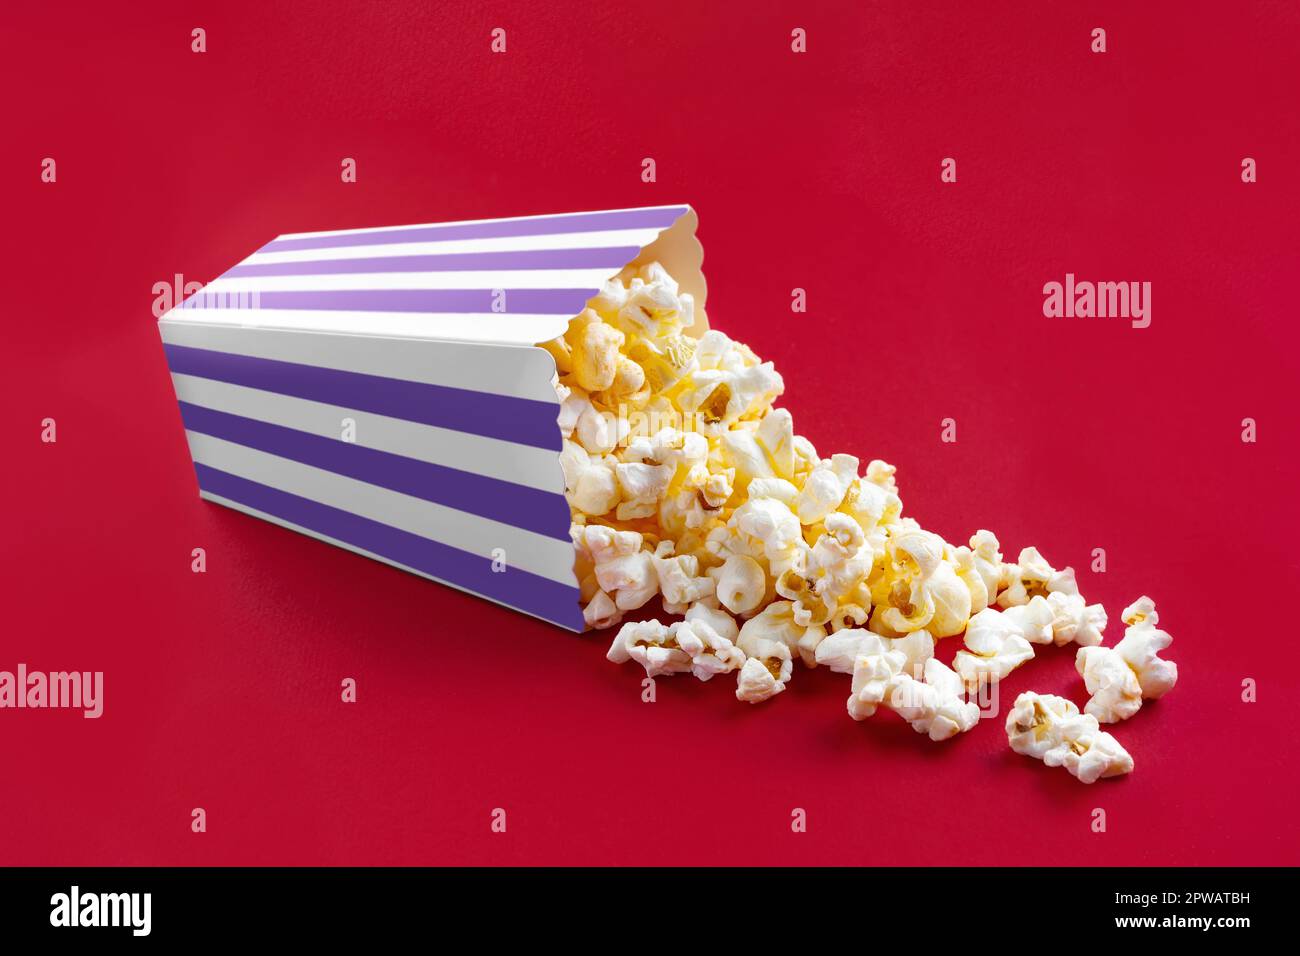 Gustoso popcorn al formaggio che cade da un secchio di cartone a righe viola, isolato su sfondo rosso. Dispersione di grani di popcorn. Film, cinema e ingresso Foto Stock